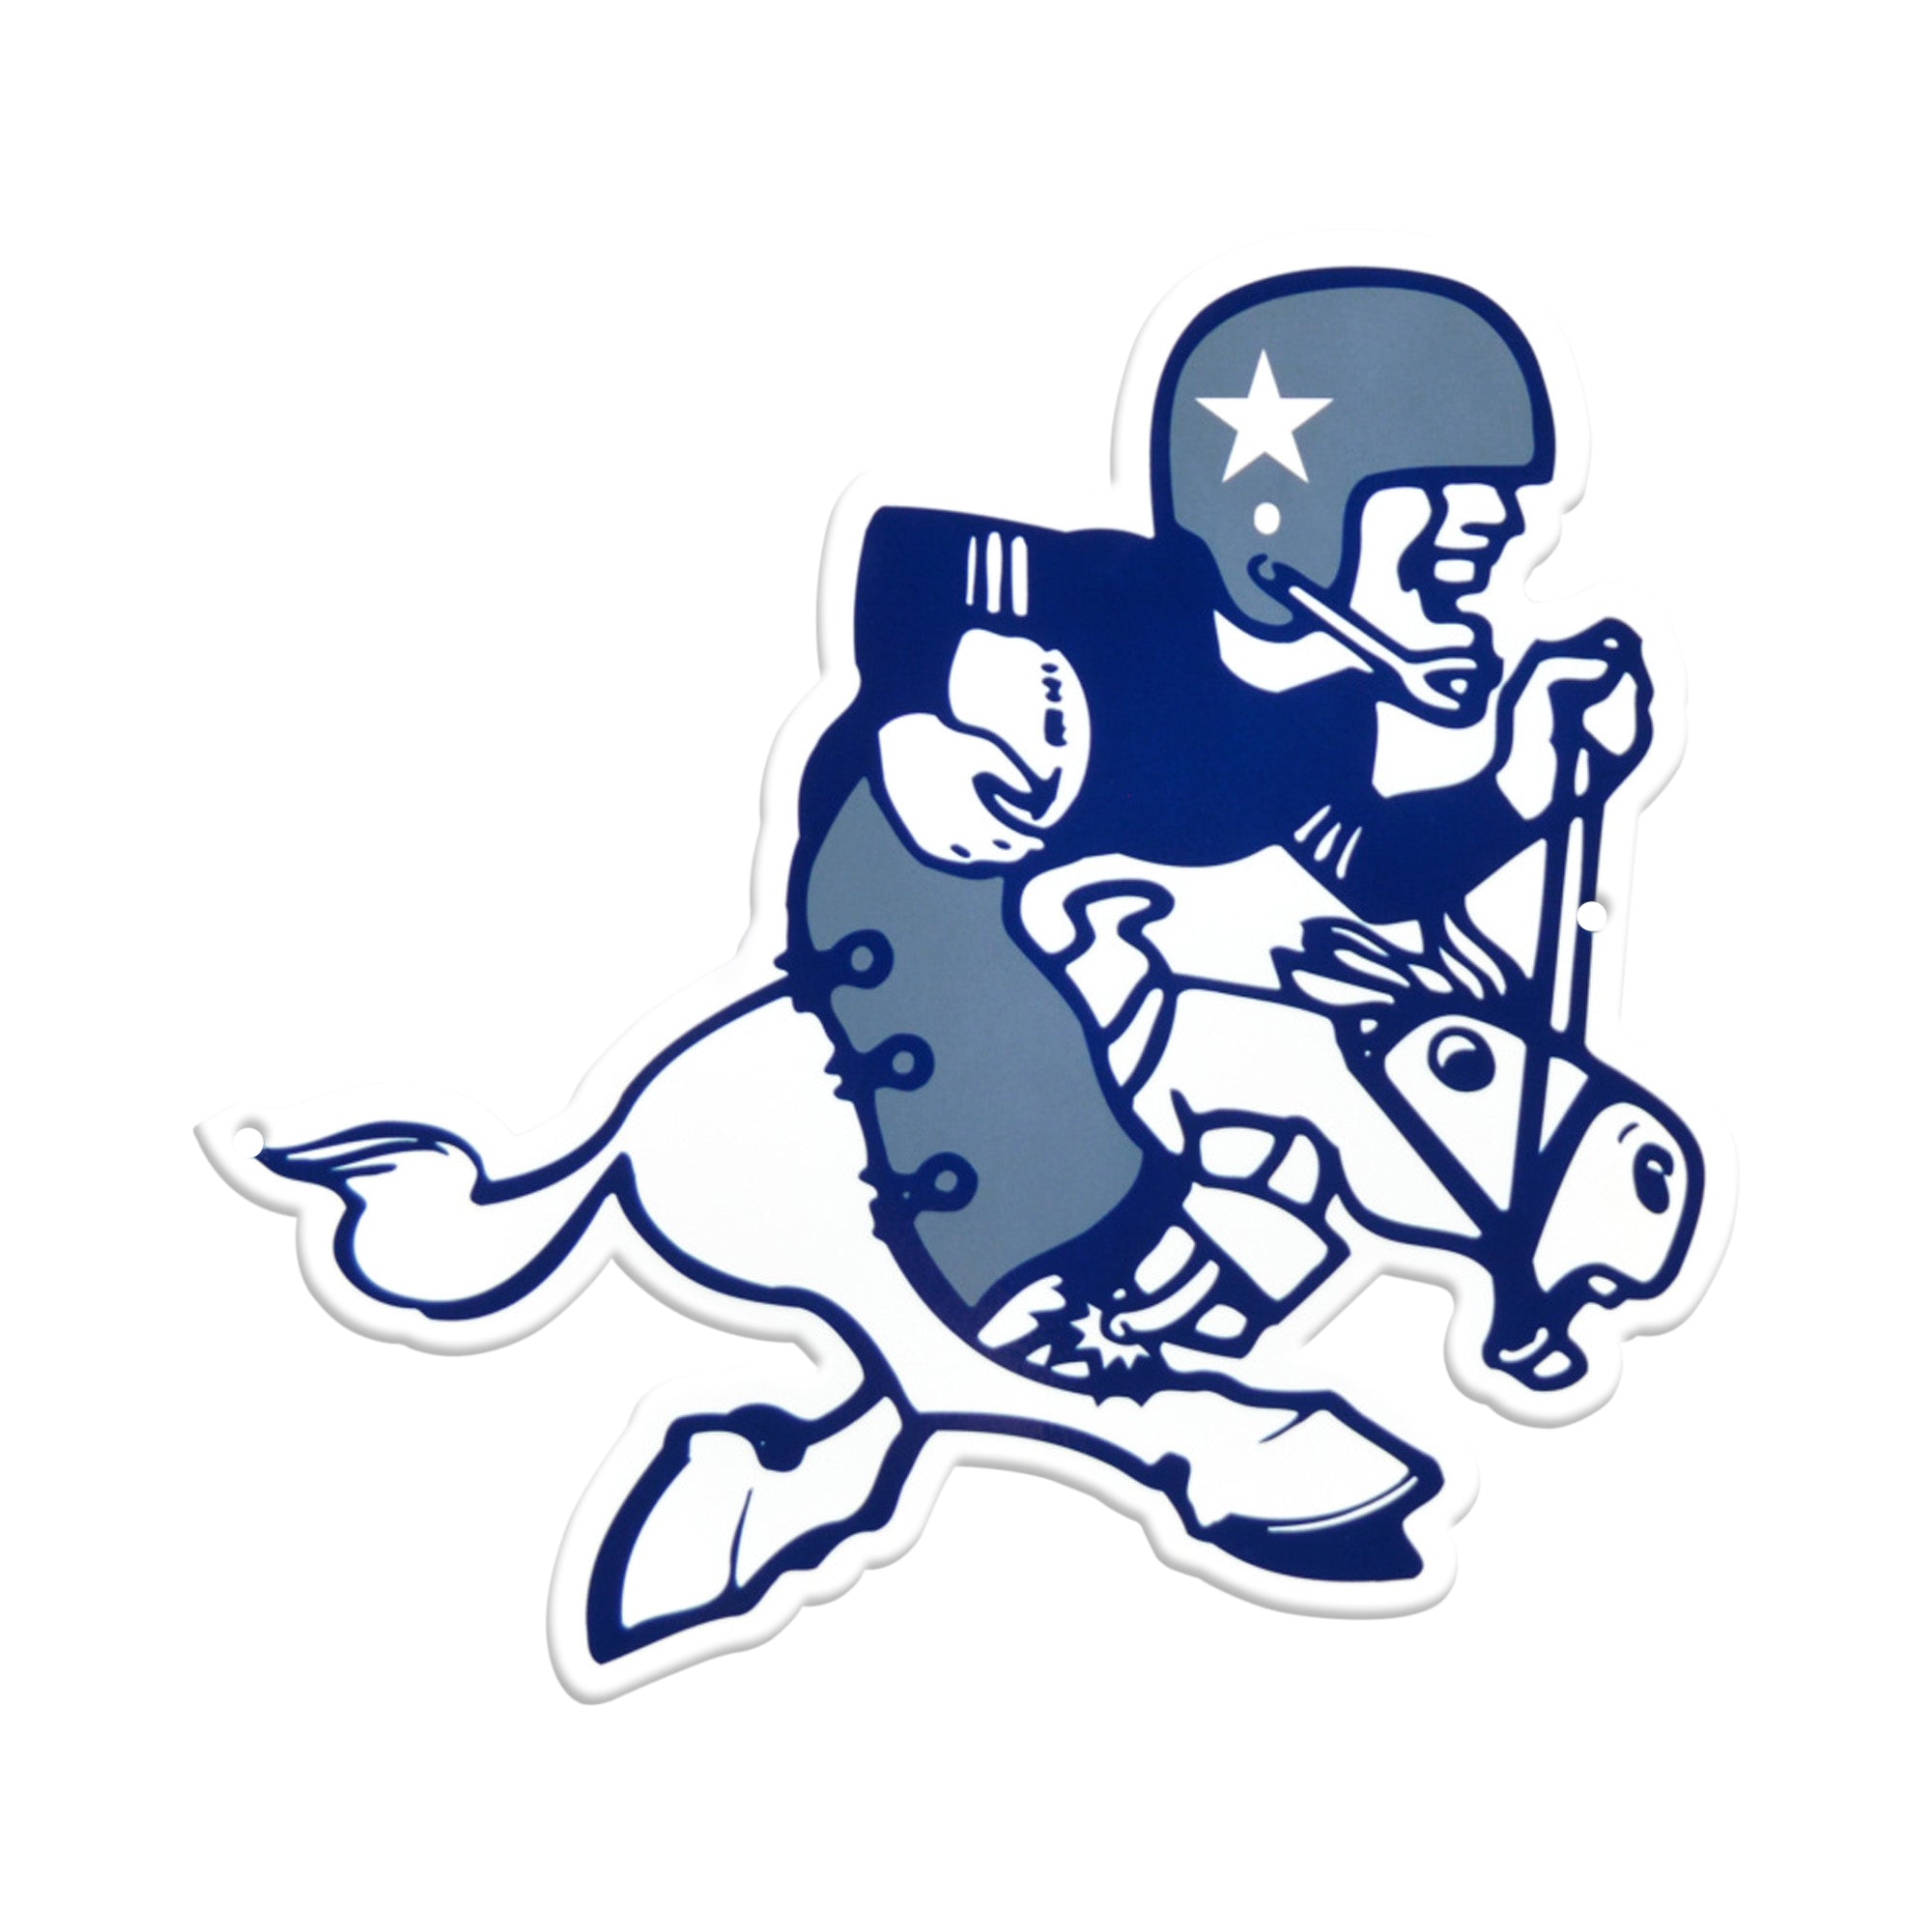 vintage dallas cowboys logo